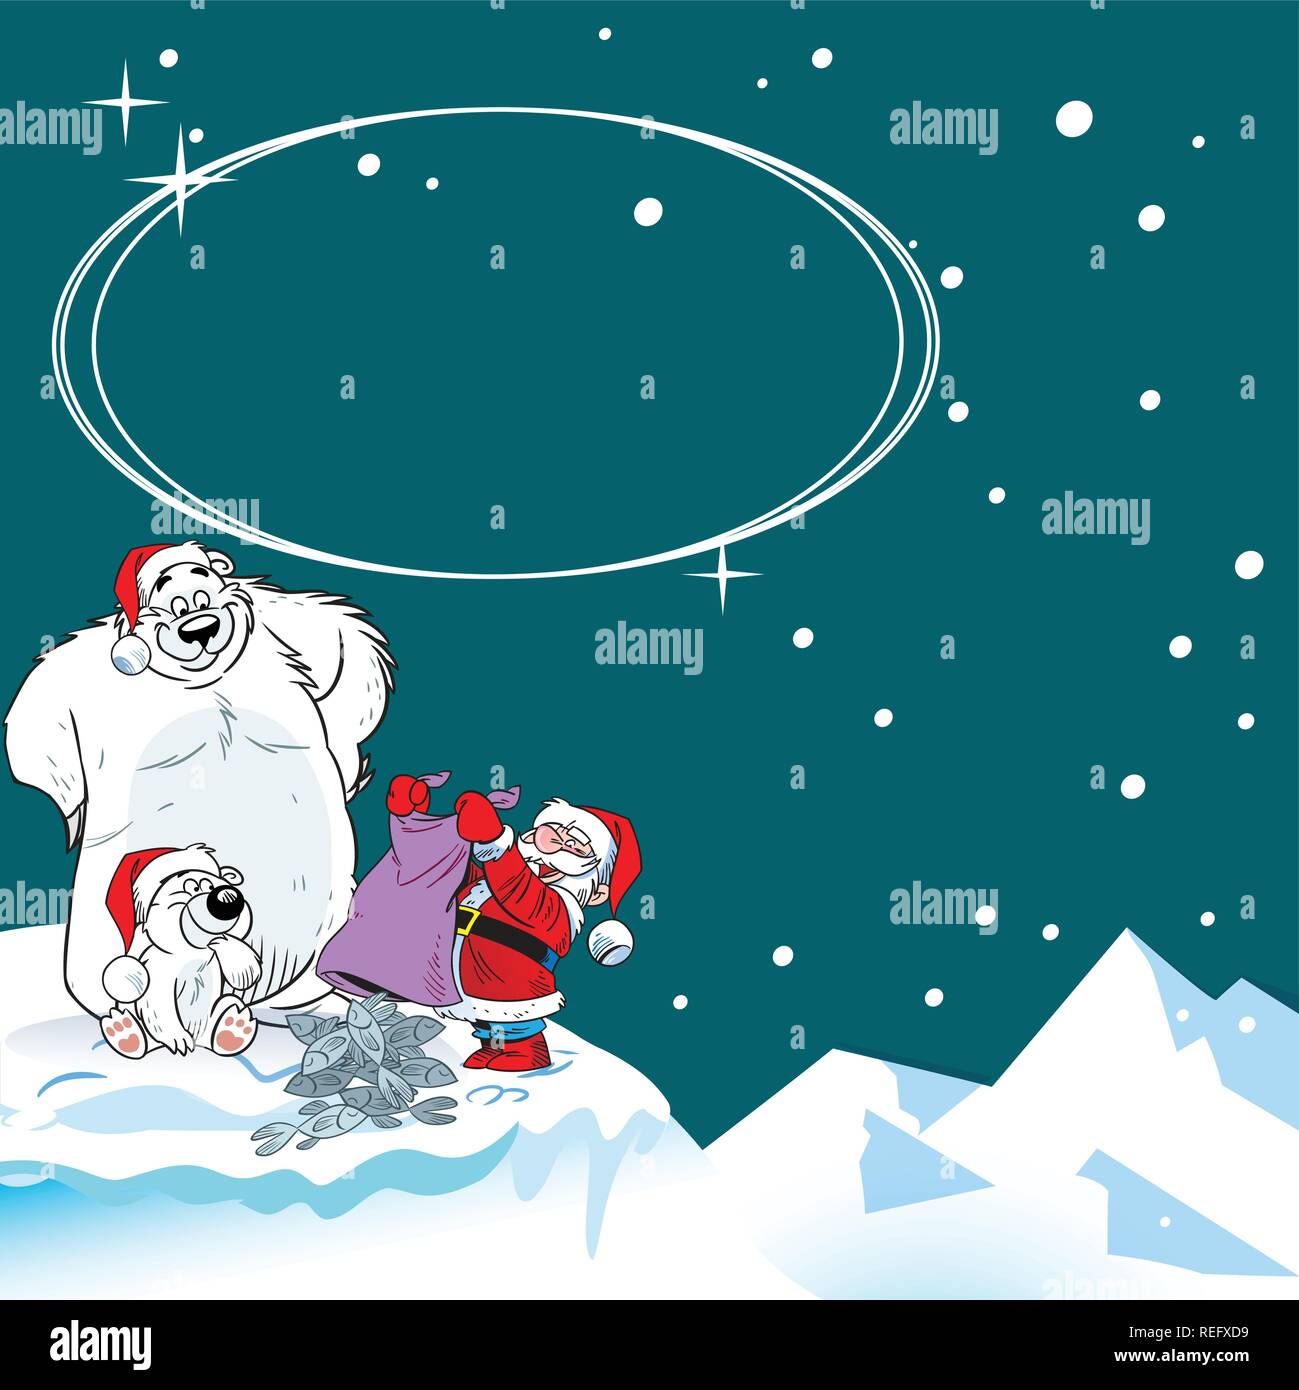 L'illustration montre l'ours polaire l'ours polaire, qui a apporté le Père Noël cadeaux de Noël. En fait l'illustration cartoon style Noël avec cartes Illustration de Vecteur